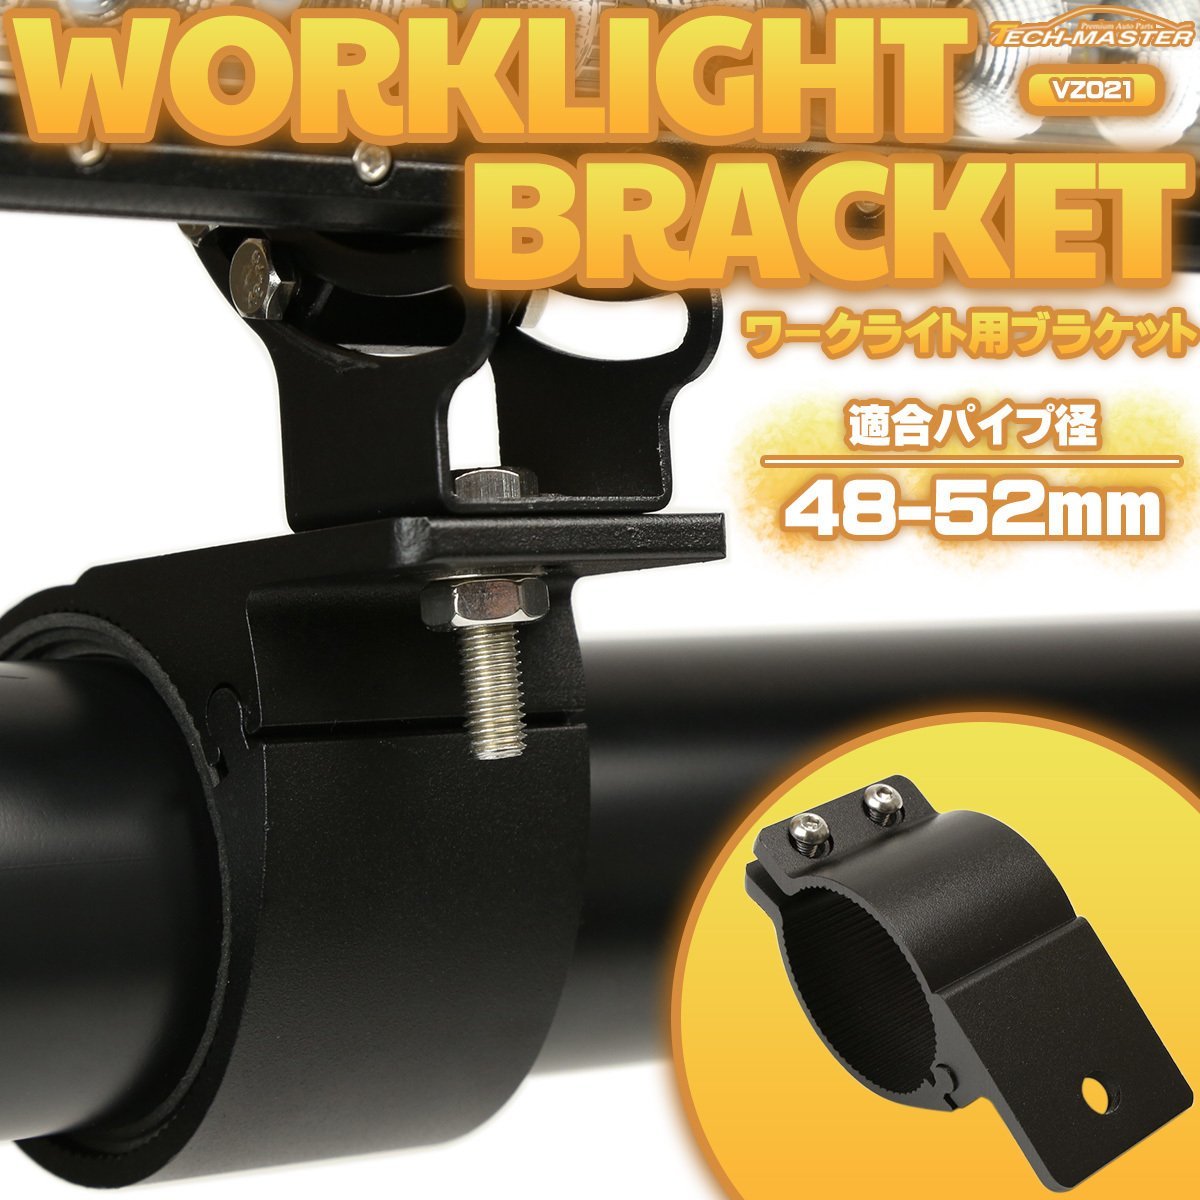 アルミ製 ブラケット パイプステー 適合パイプ径 48-52mm 作業灯 ワークライト ライトバー 集魚灯 などの取り付けに VZ021_画像1